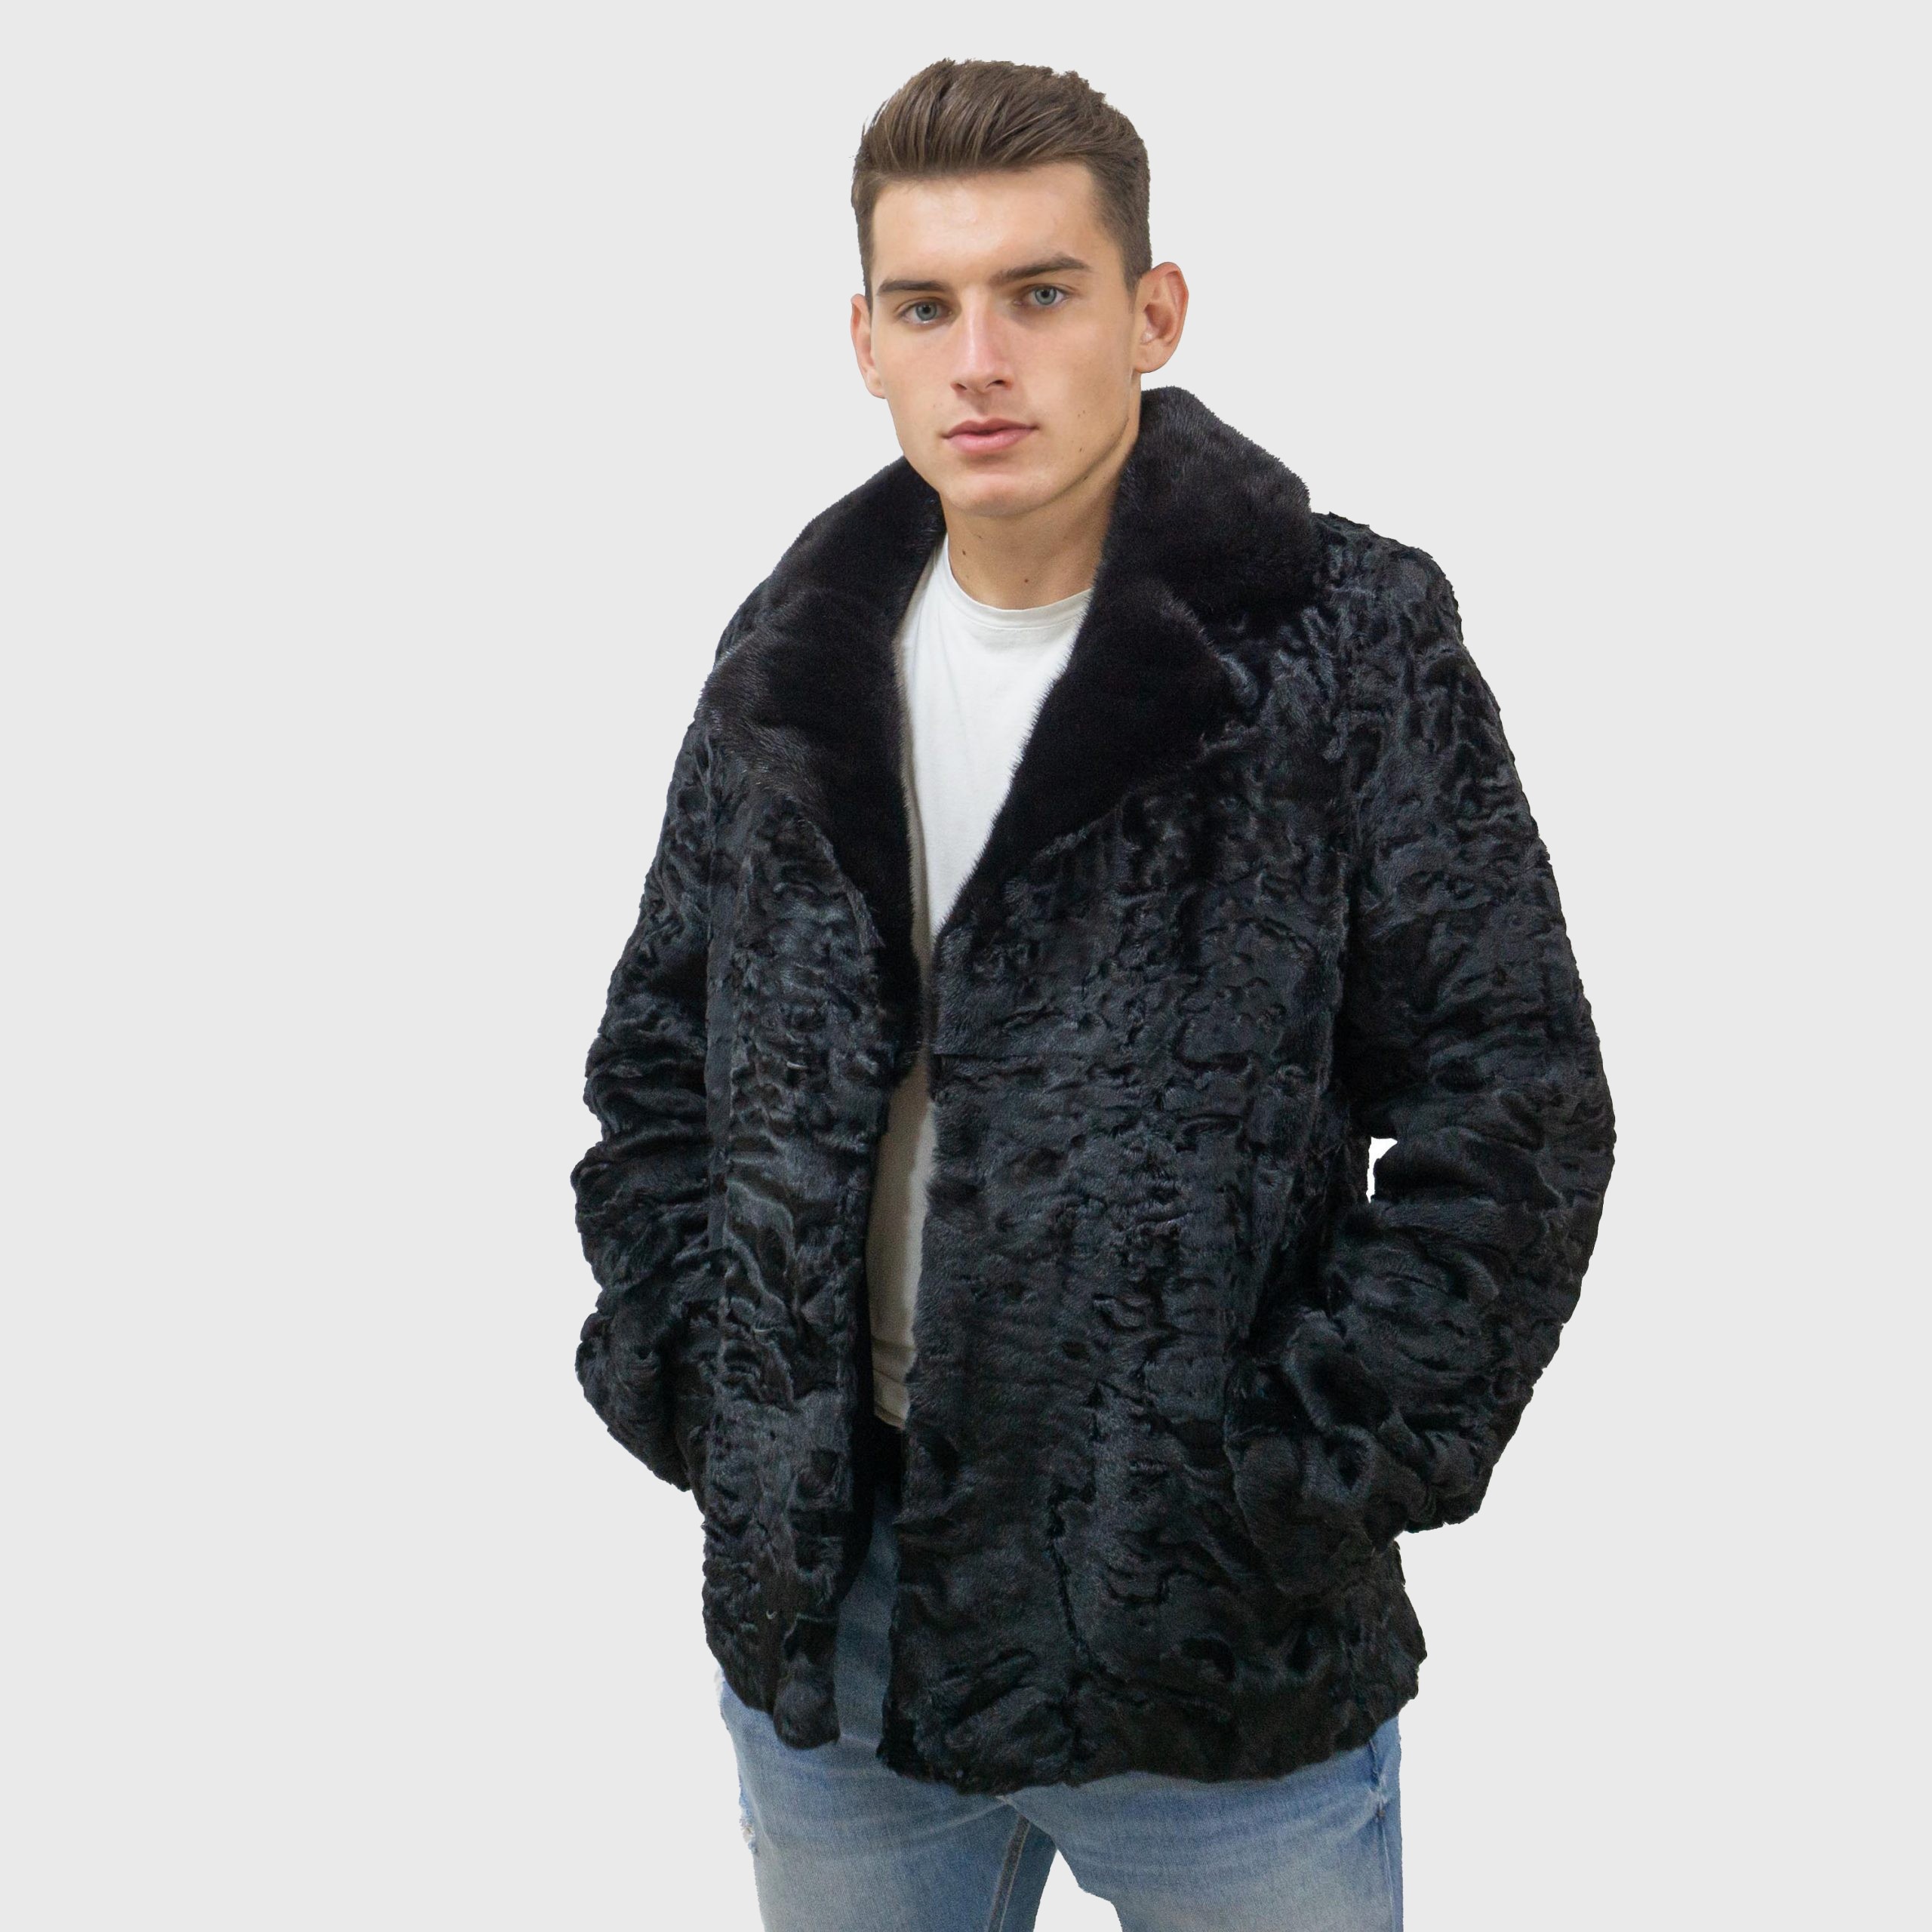 Black astrakhan fur jacket with mink fur collar